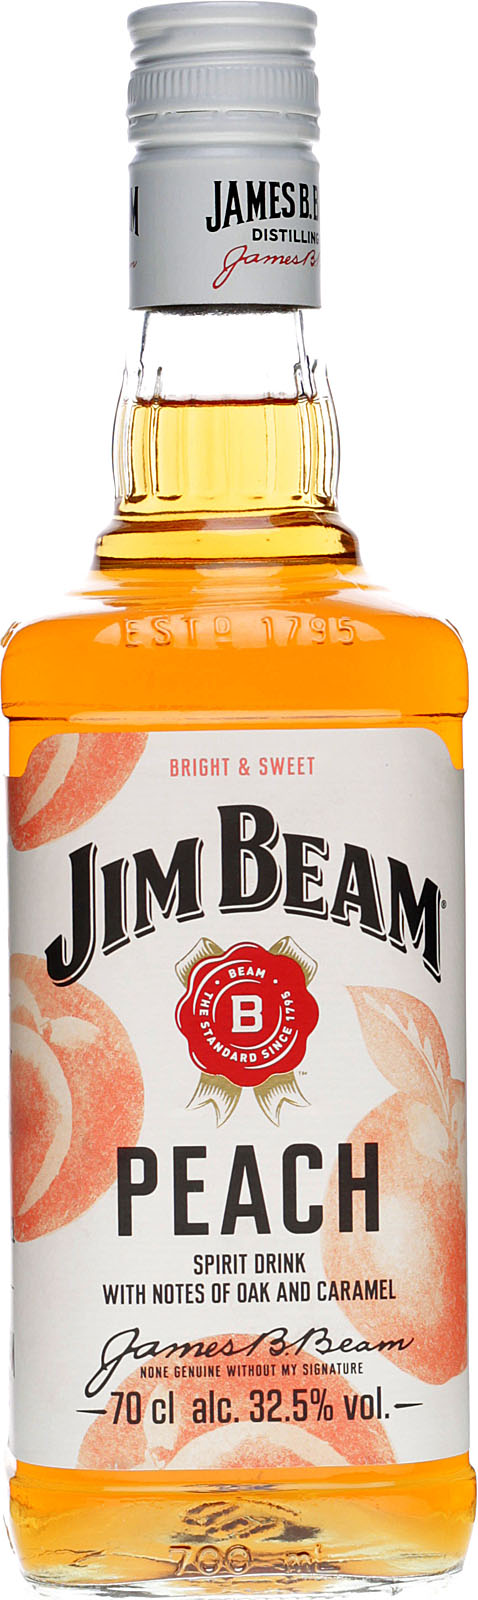 Jim Beam Peach 0,7 Liter % Shop im Vol. 32,5